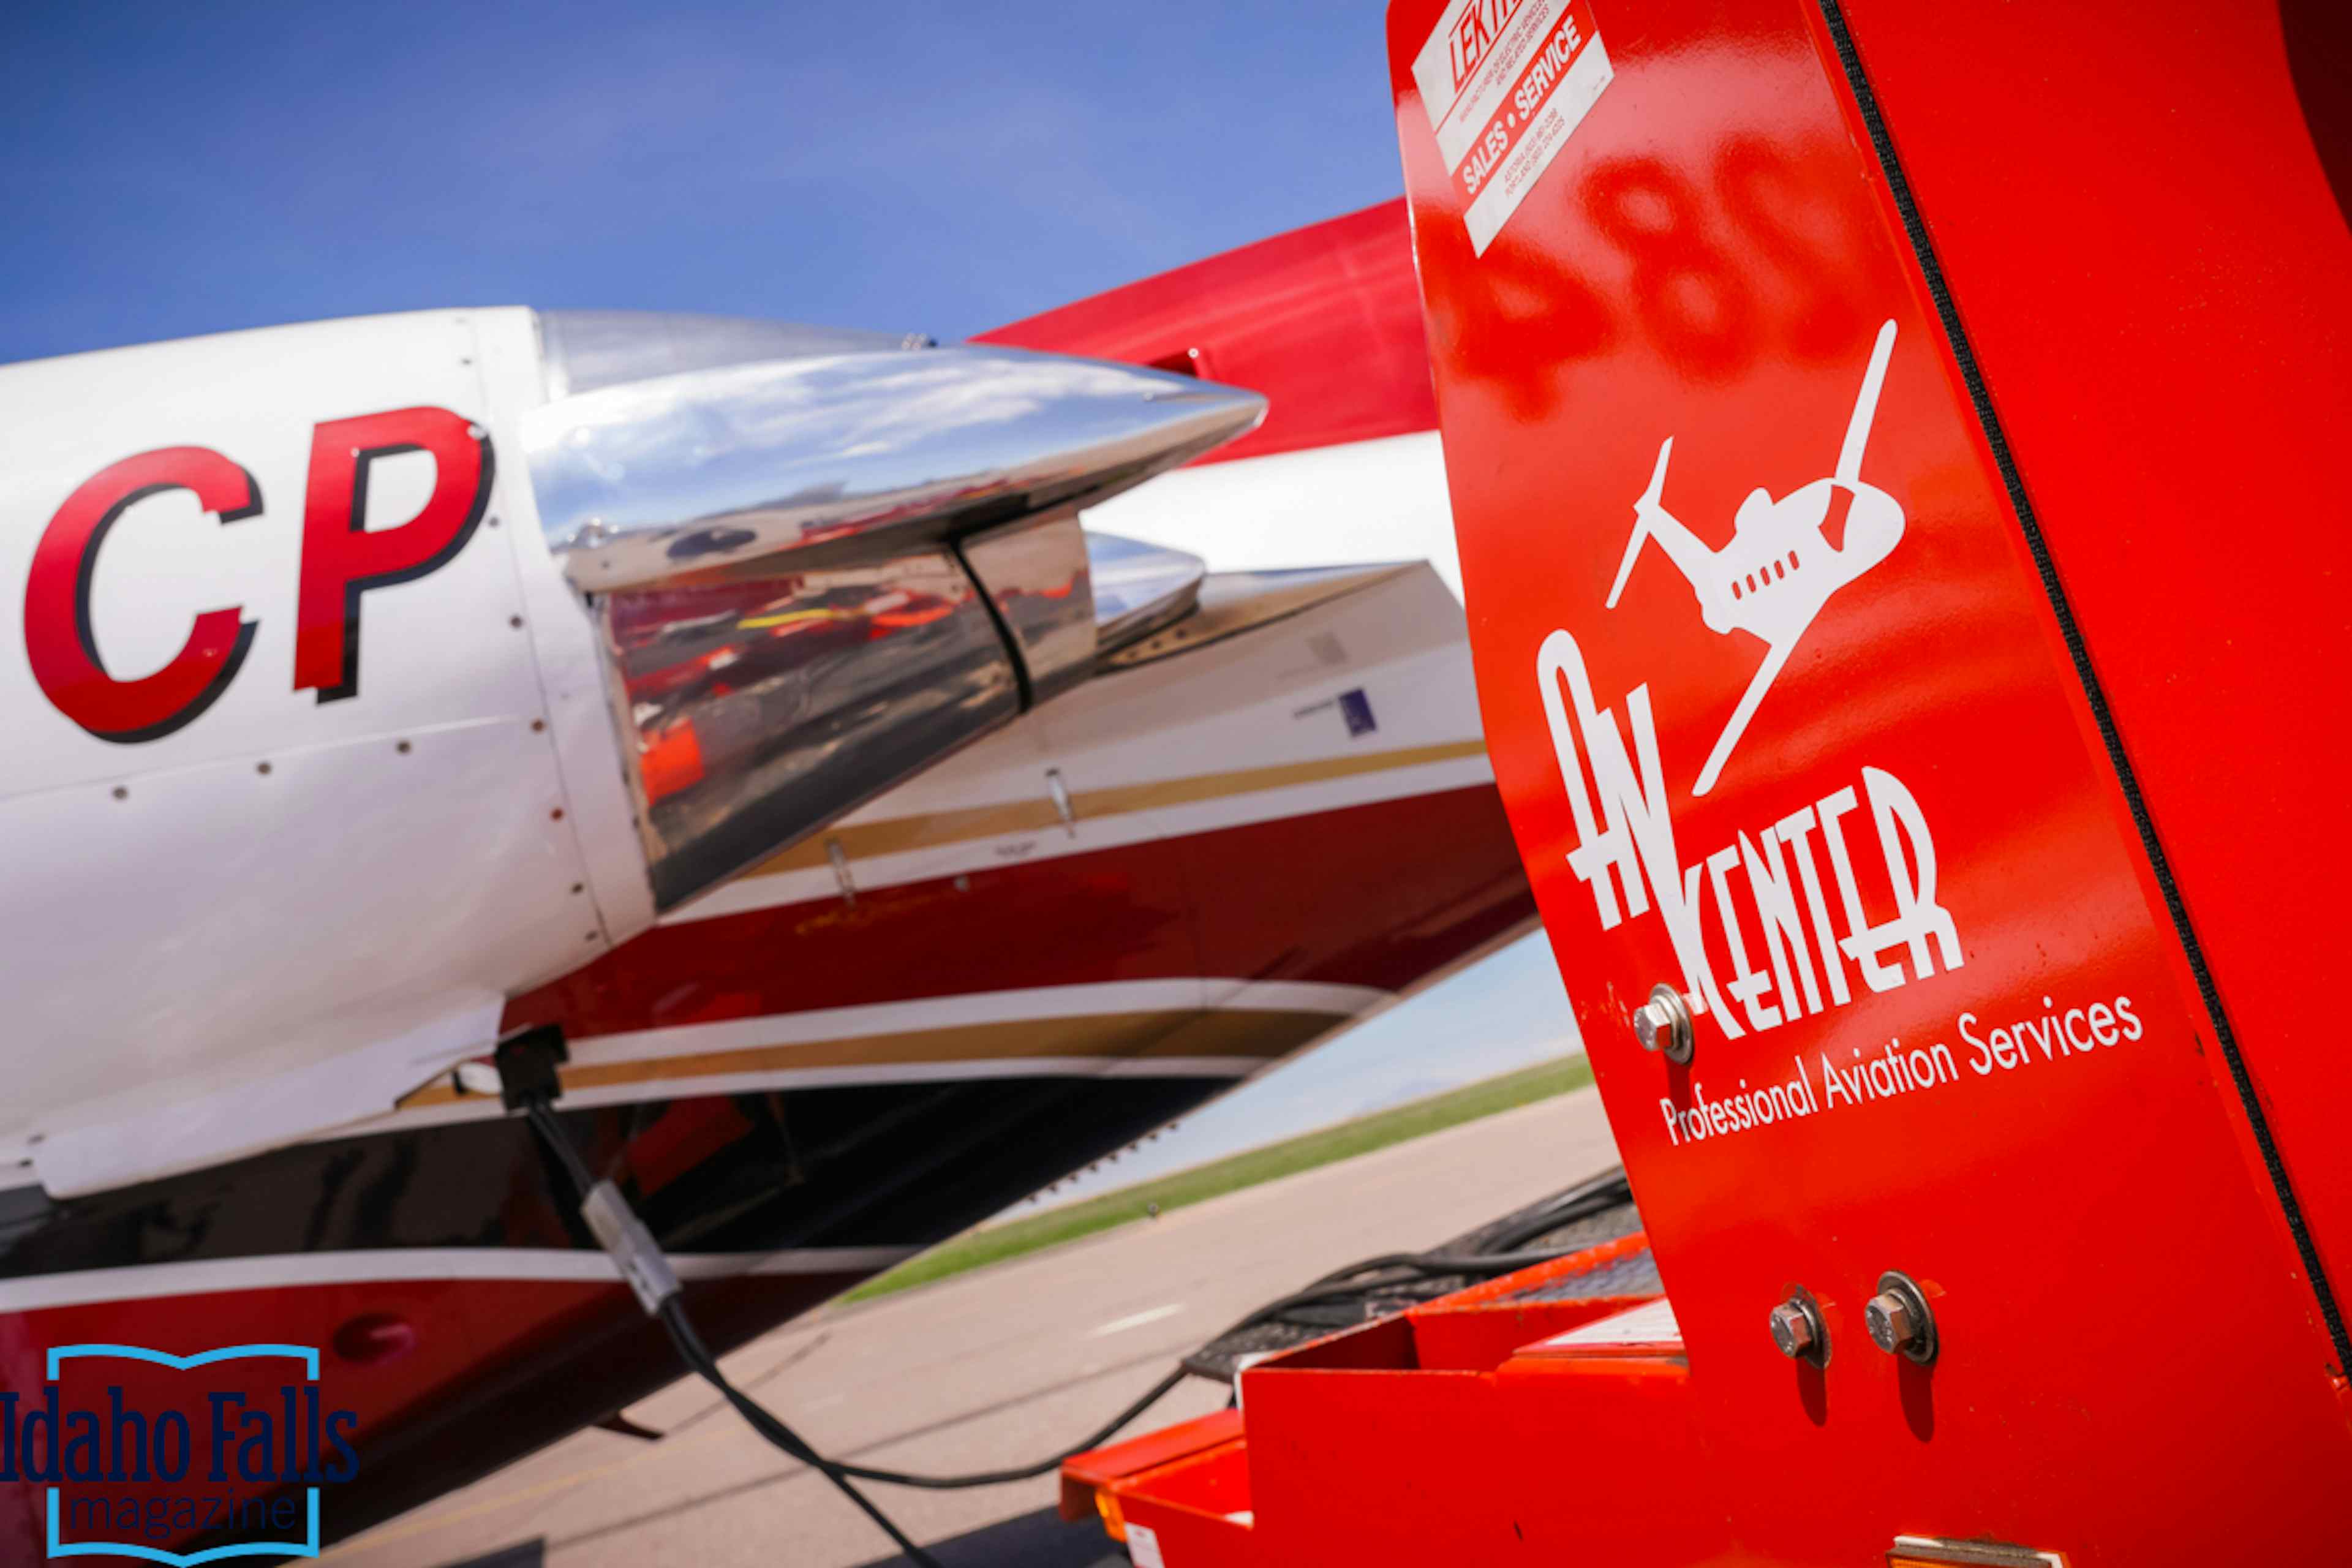 Professional aviation services provided to you via Av-Center of Pocatello, Idaho of the Yellowstone Teton Territory